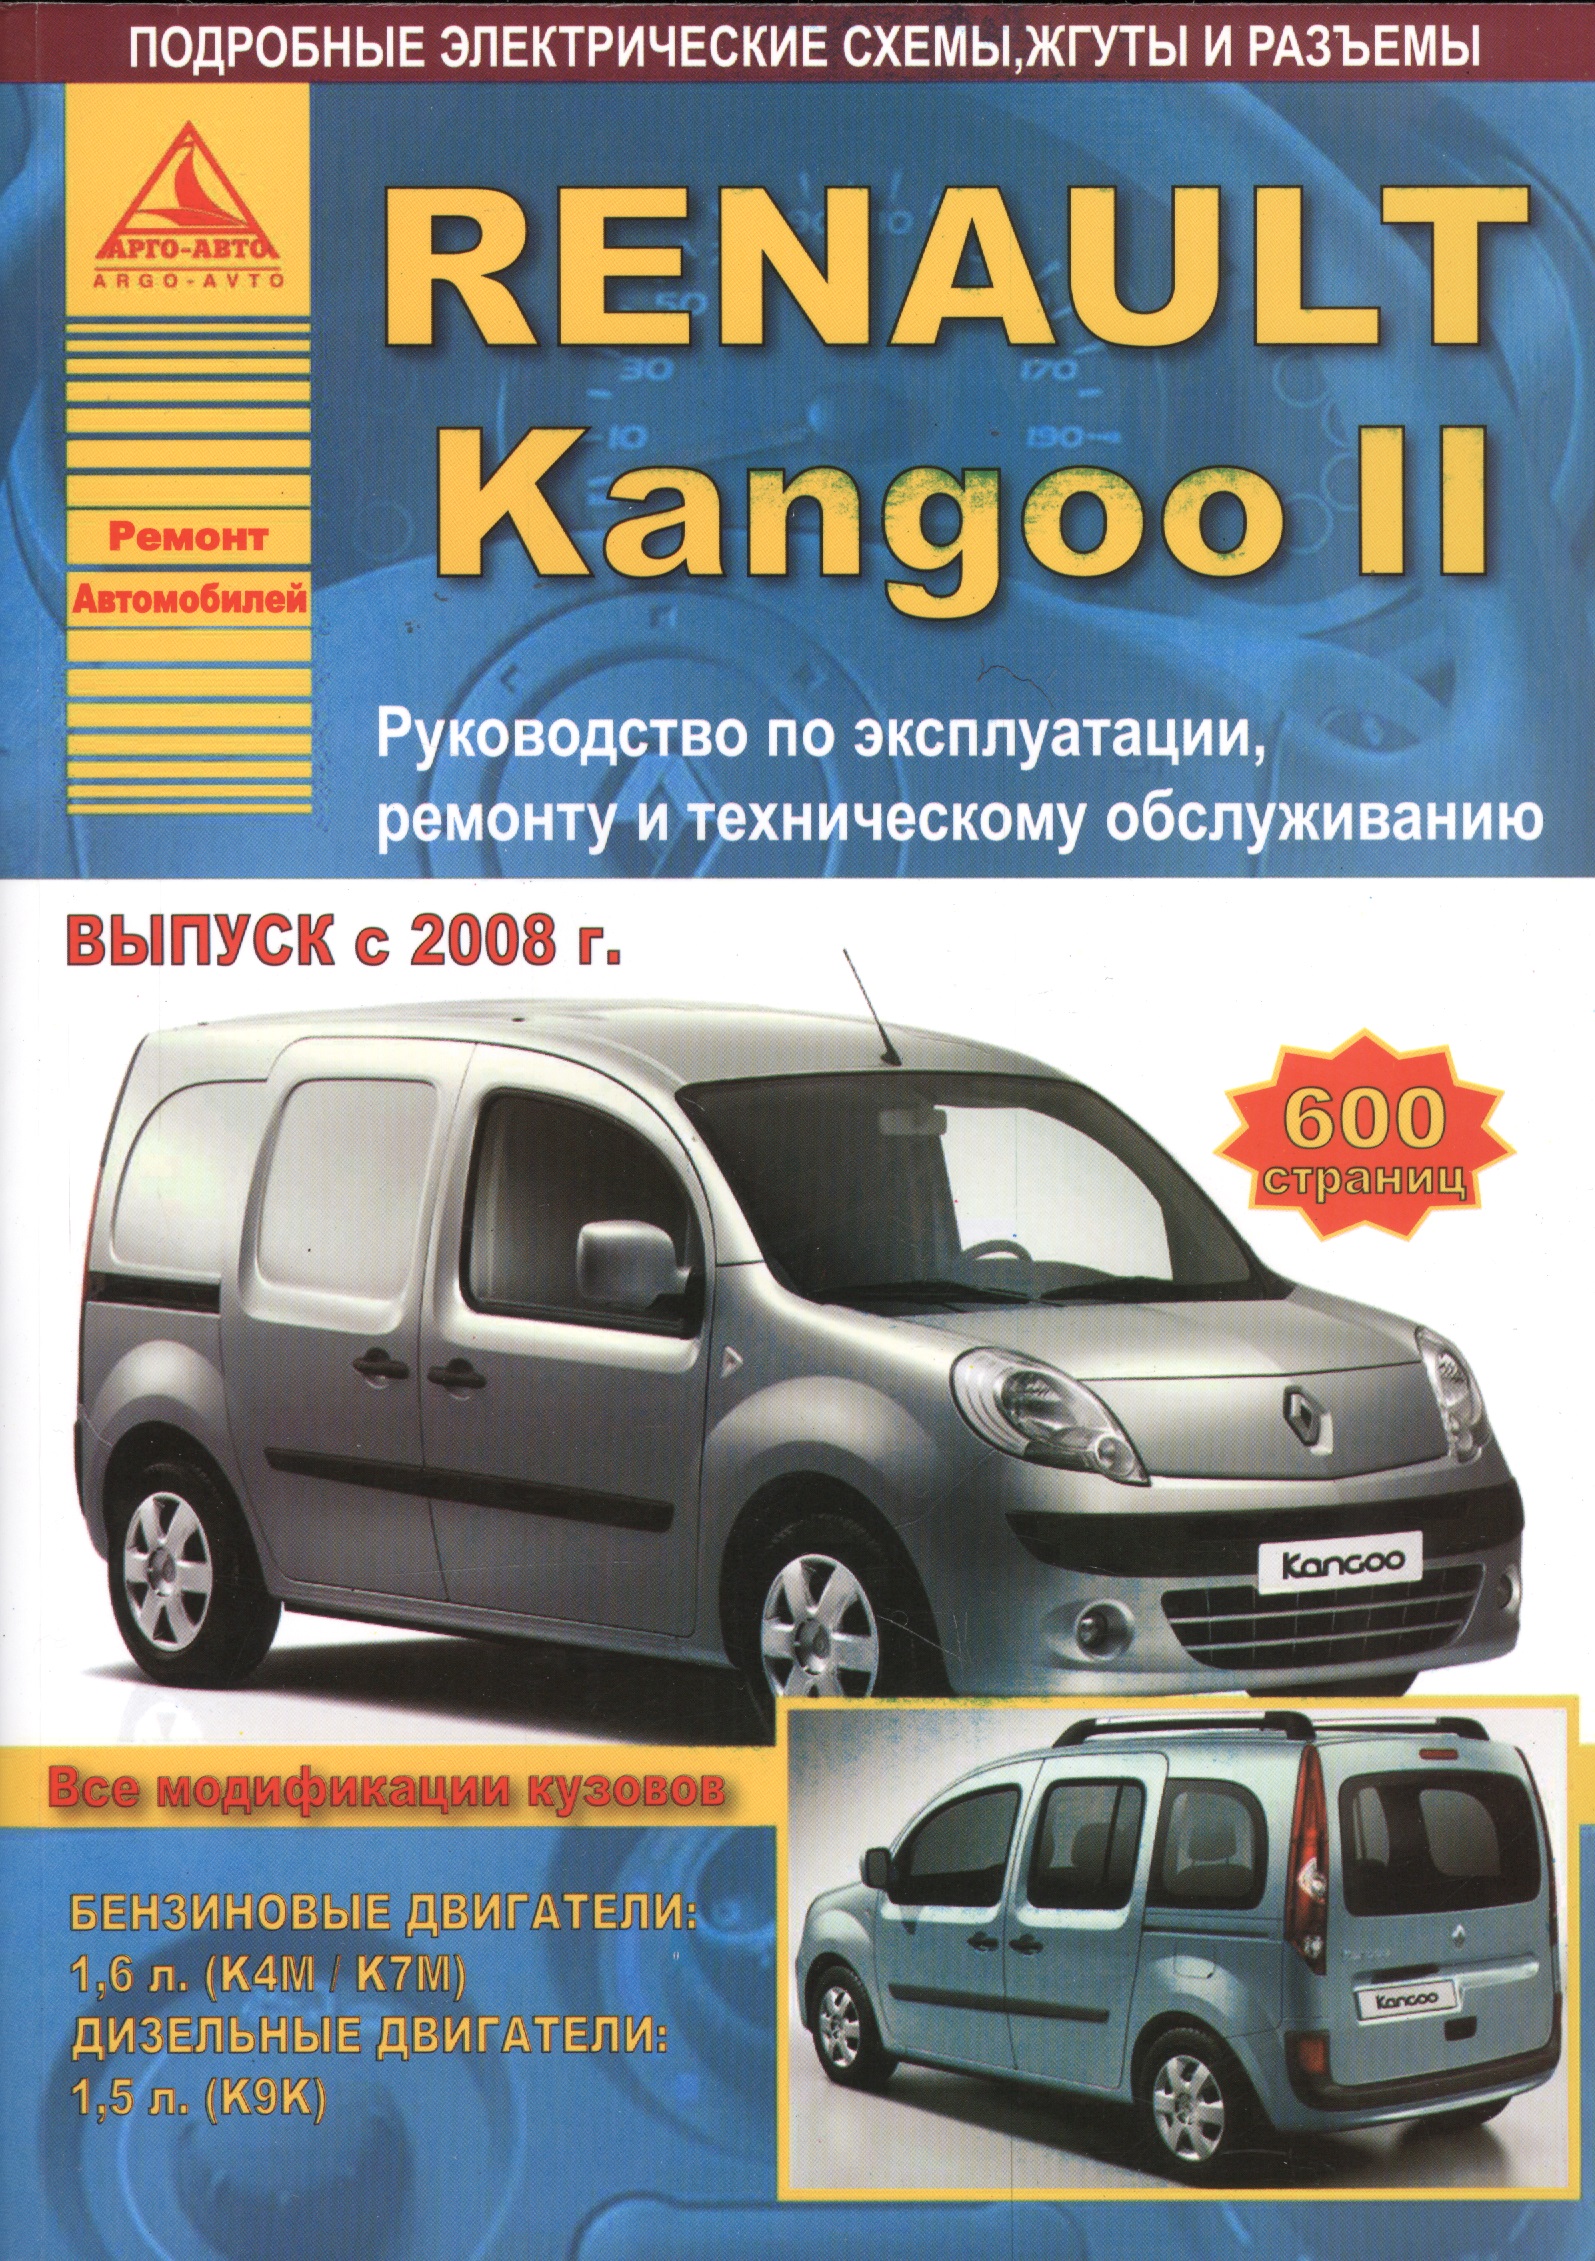 Renault Kangoo II. Руководство по эксплуатации, ремонту и техническому обслуживанию. Выпуск с 2008 г. Бензиновые двигатели: 1,6 л. (К4М/К7М). Дизельные двигатели: 1,5 л. (К9К)